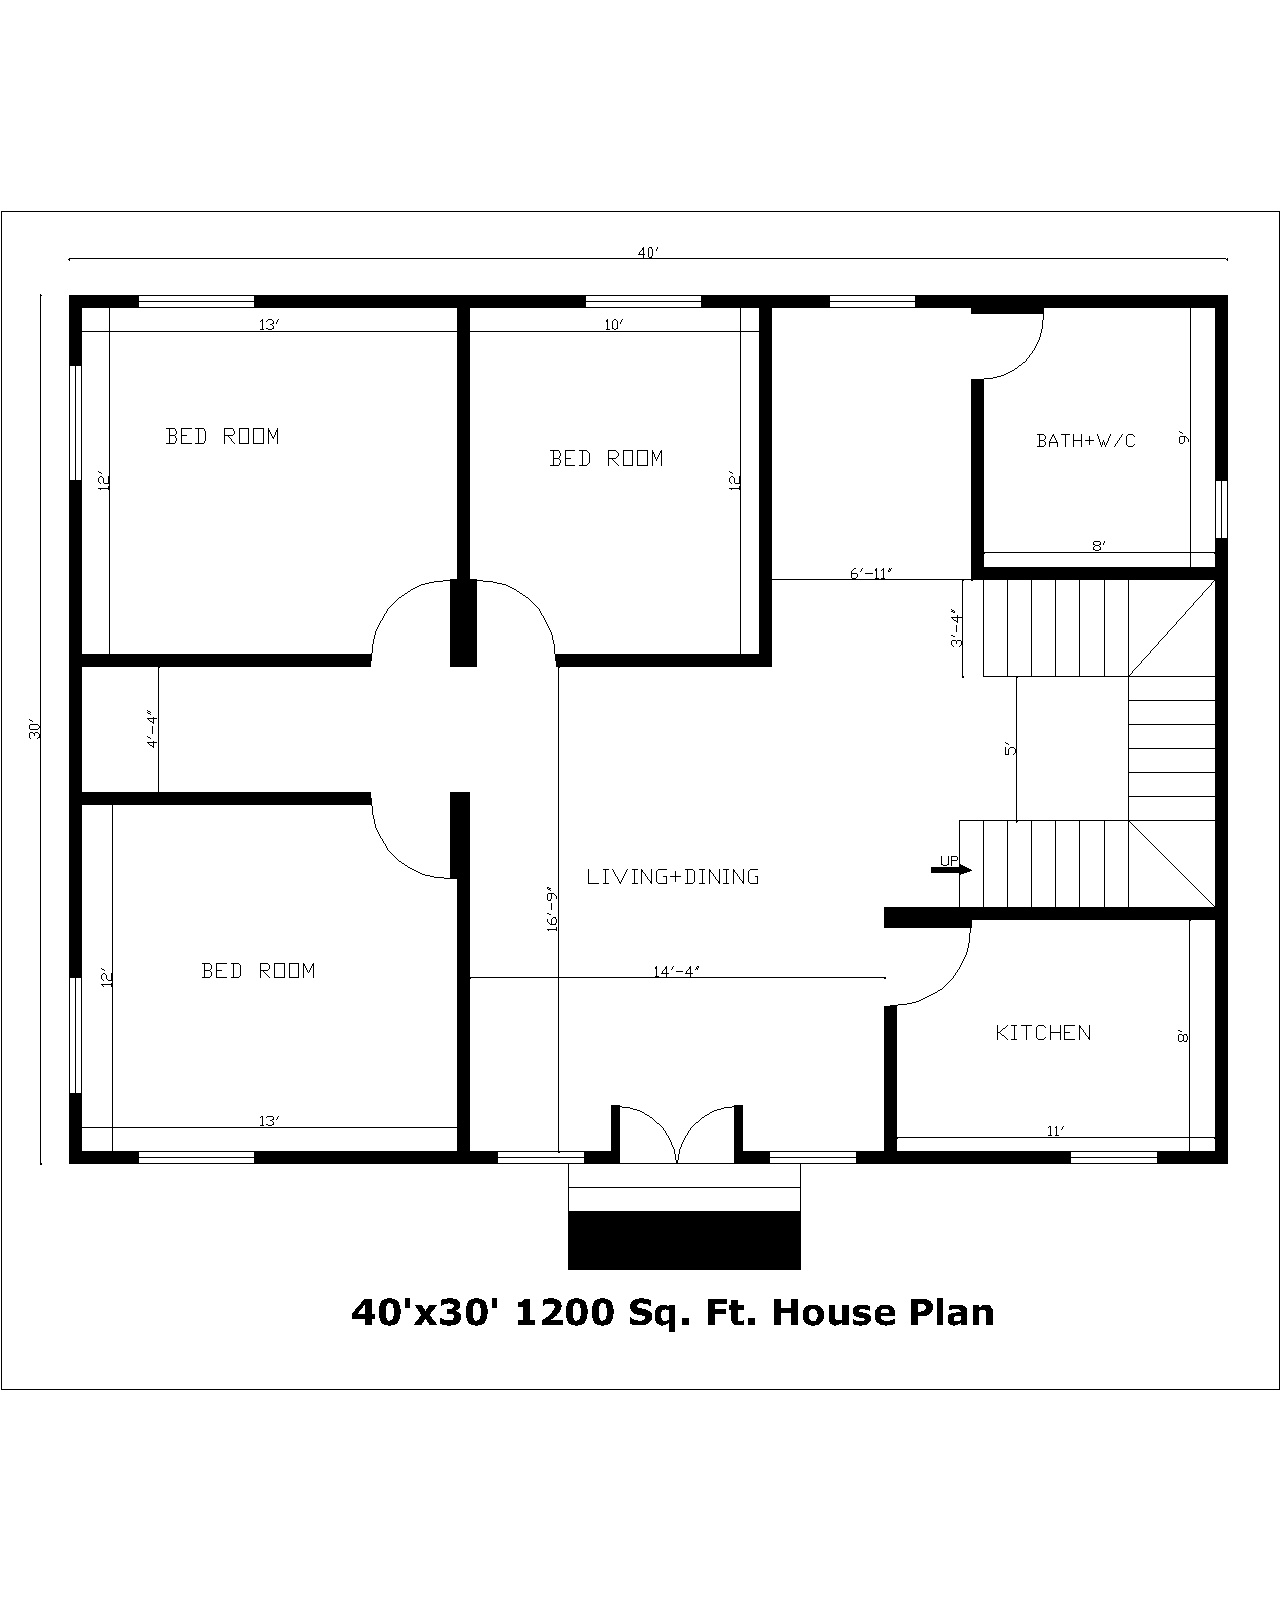 40'x30' 1200 Sq. Ft.House Plan